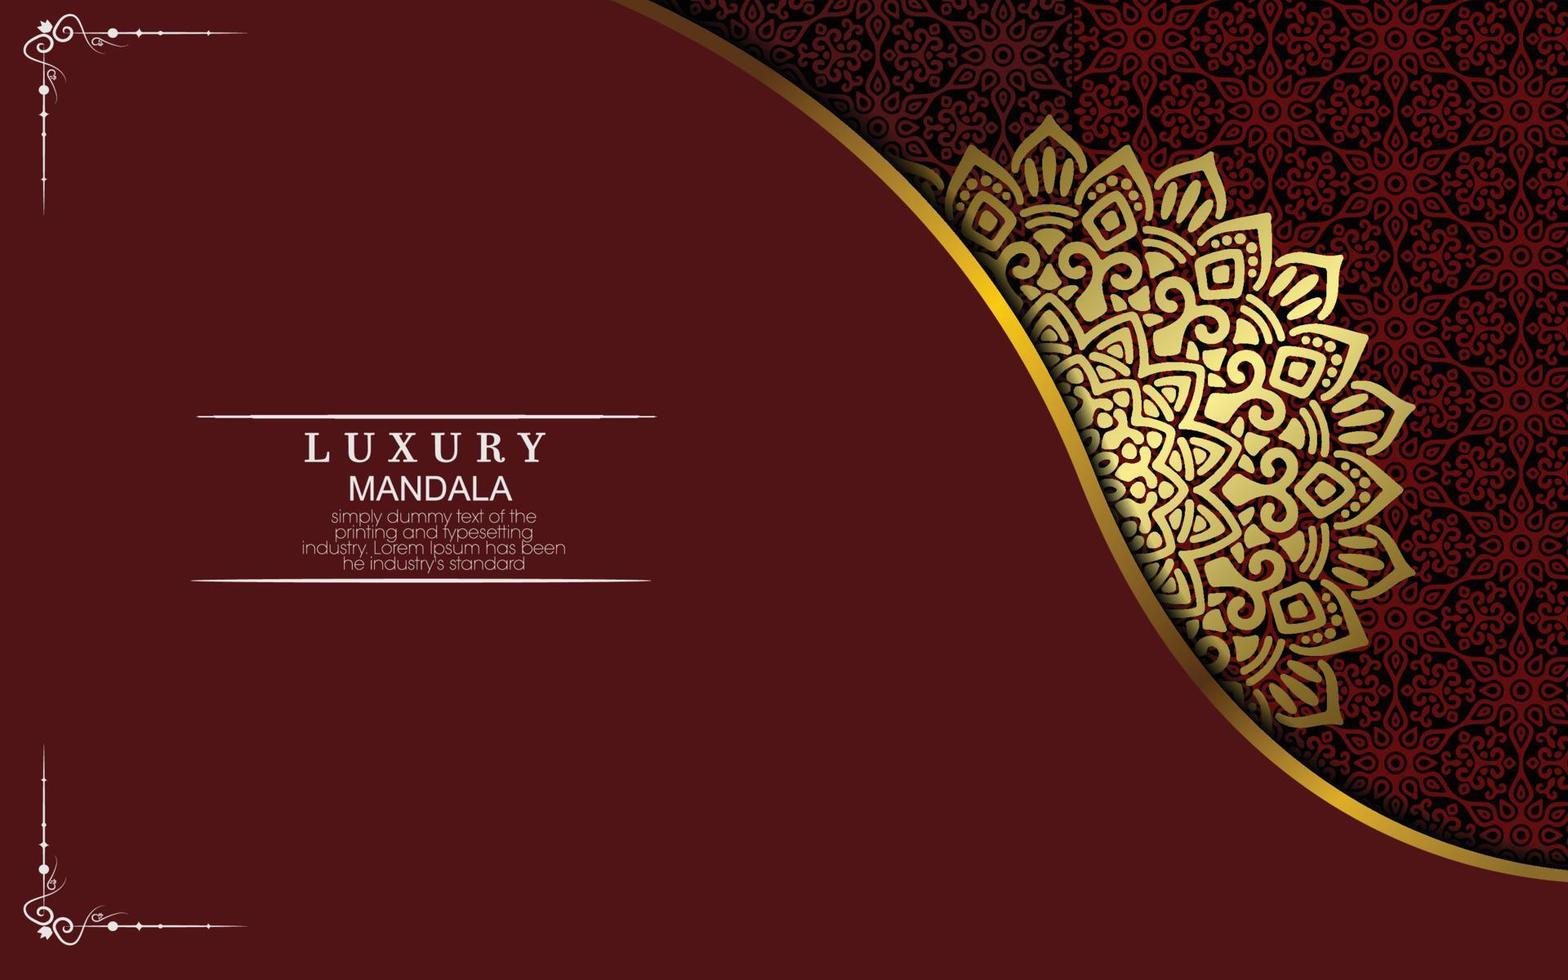 mandalasjabloon met elegante, klassieke elementen. geweldig voor uitnodiging, flyer, menu, brochure, achtergrond vector